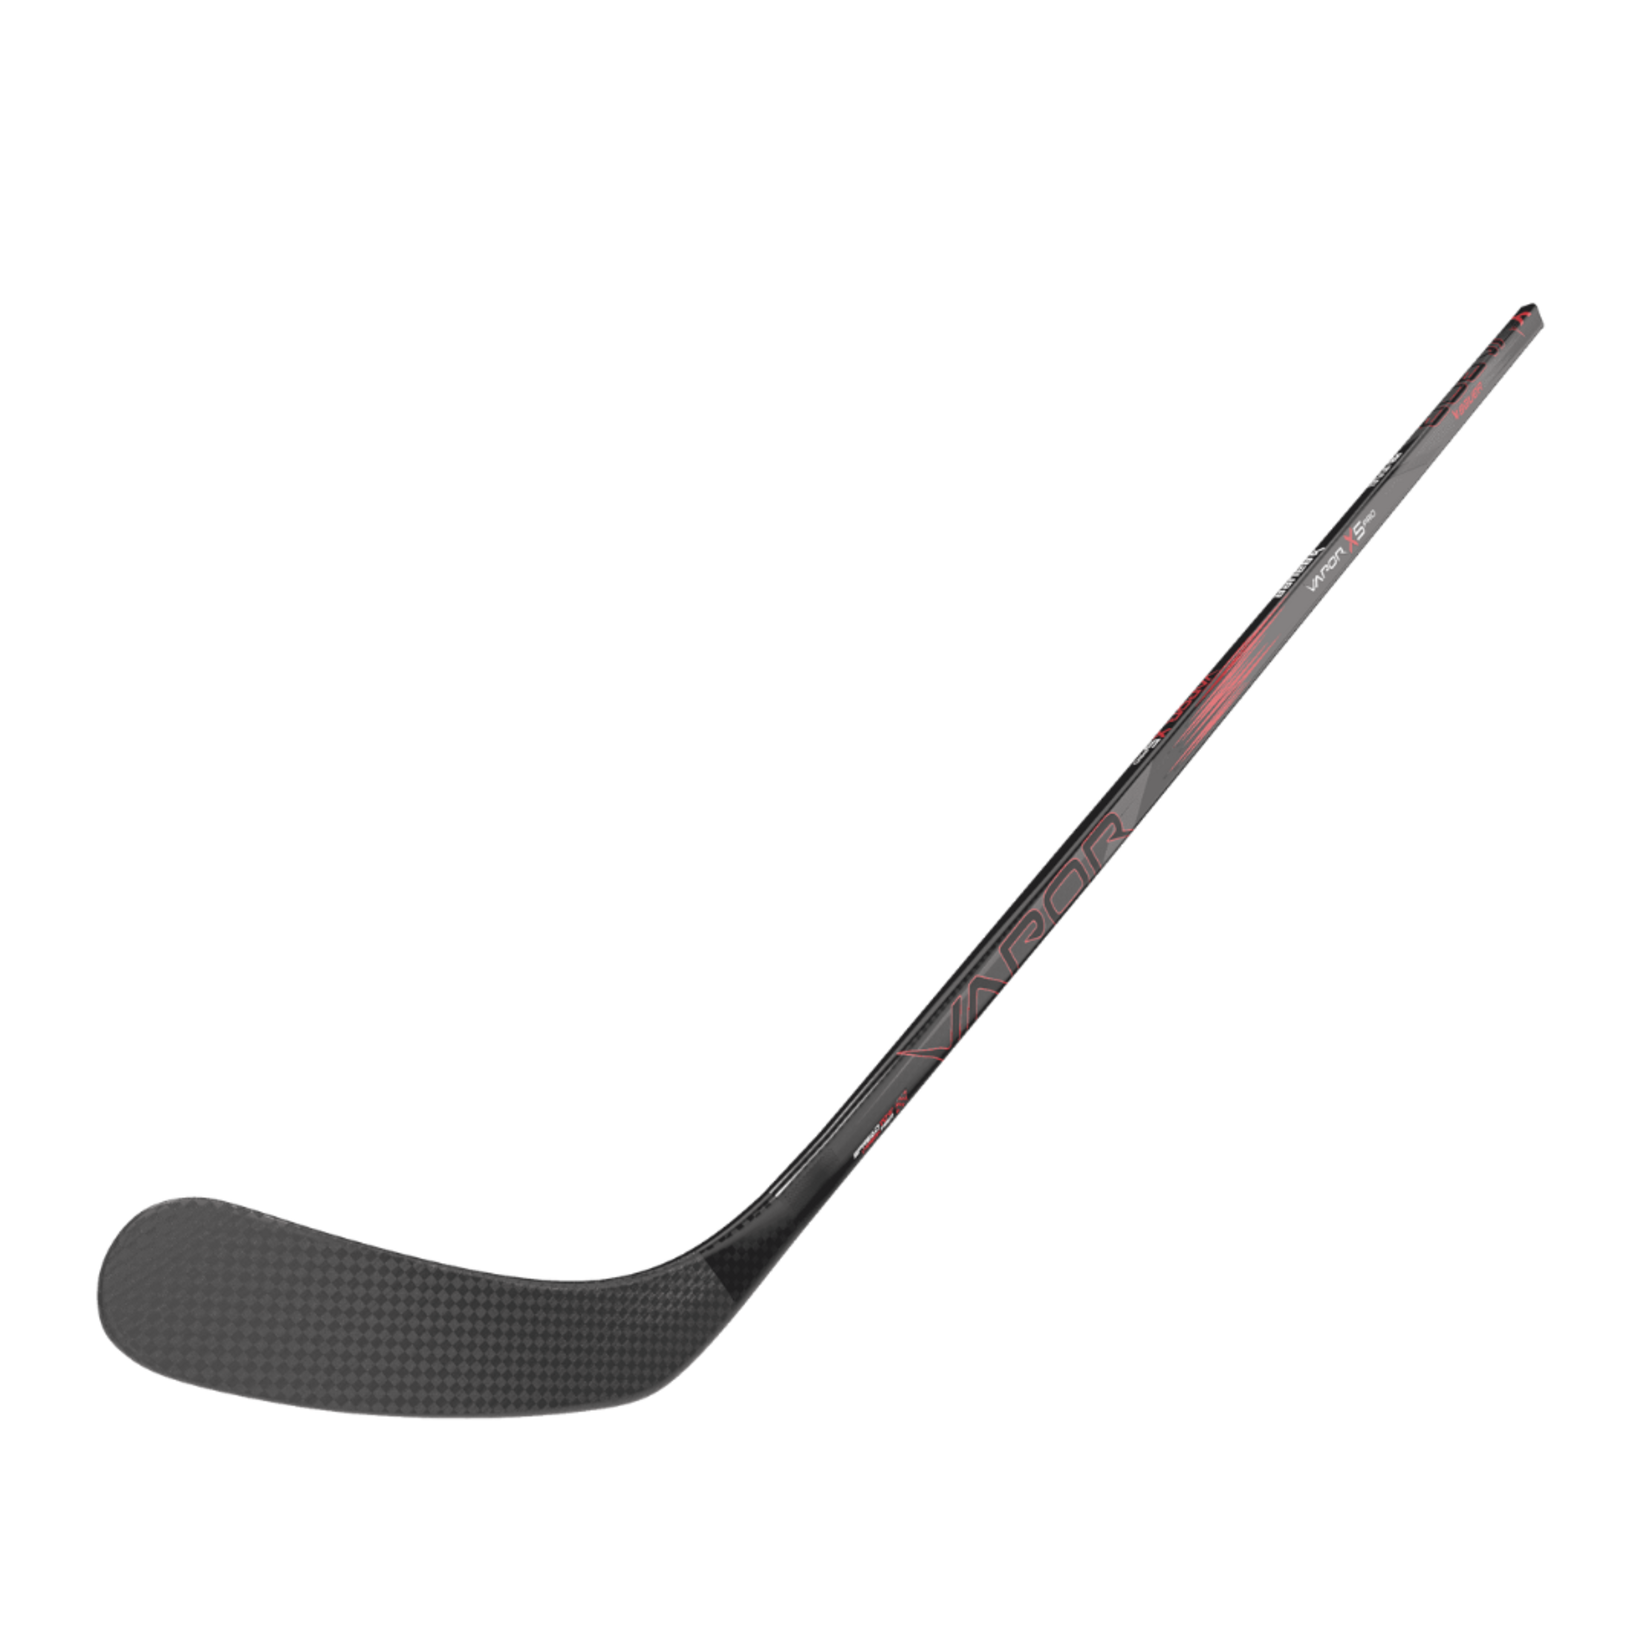 Bauer Bauer Hockey Stick, Vapor X5 Pro, Grip, Senior